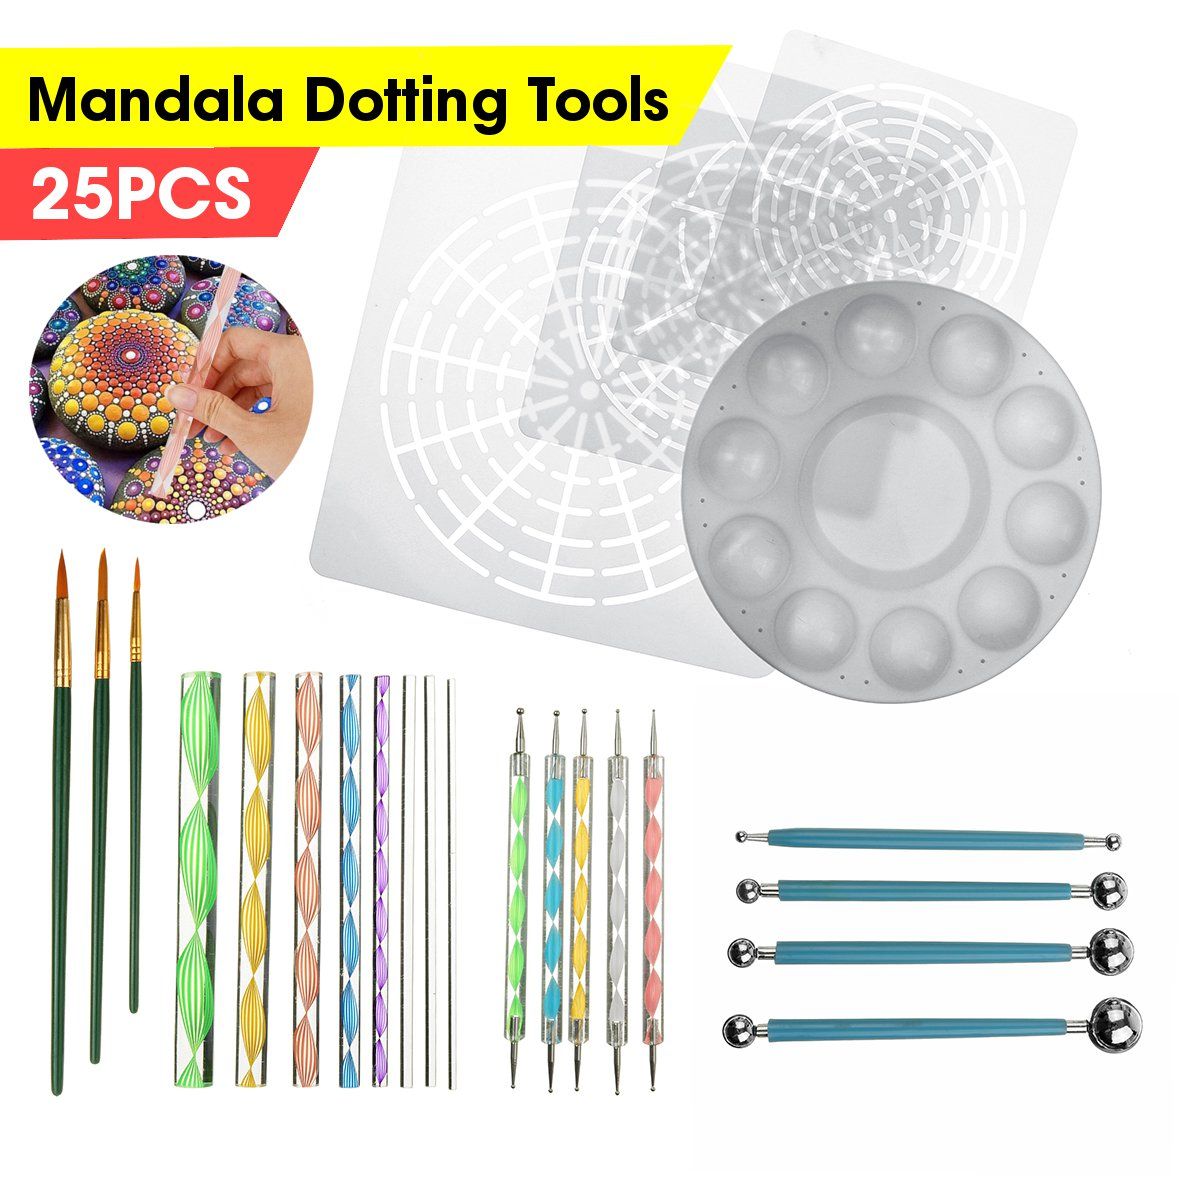 25pcs-Mandala-Dotting-Tools-Rock-Painting-Kit-Dot-Art-Rock-Pen-Paint-Stencil-1613975